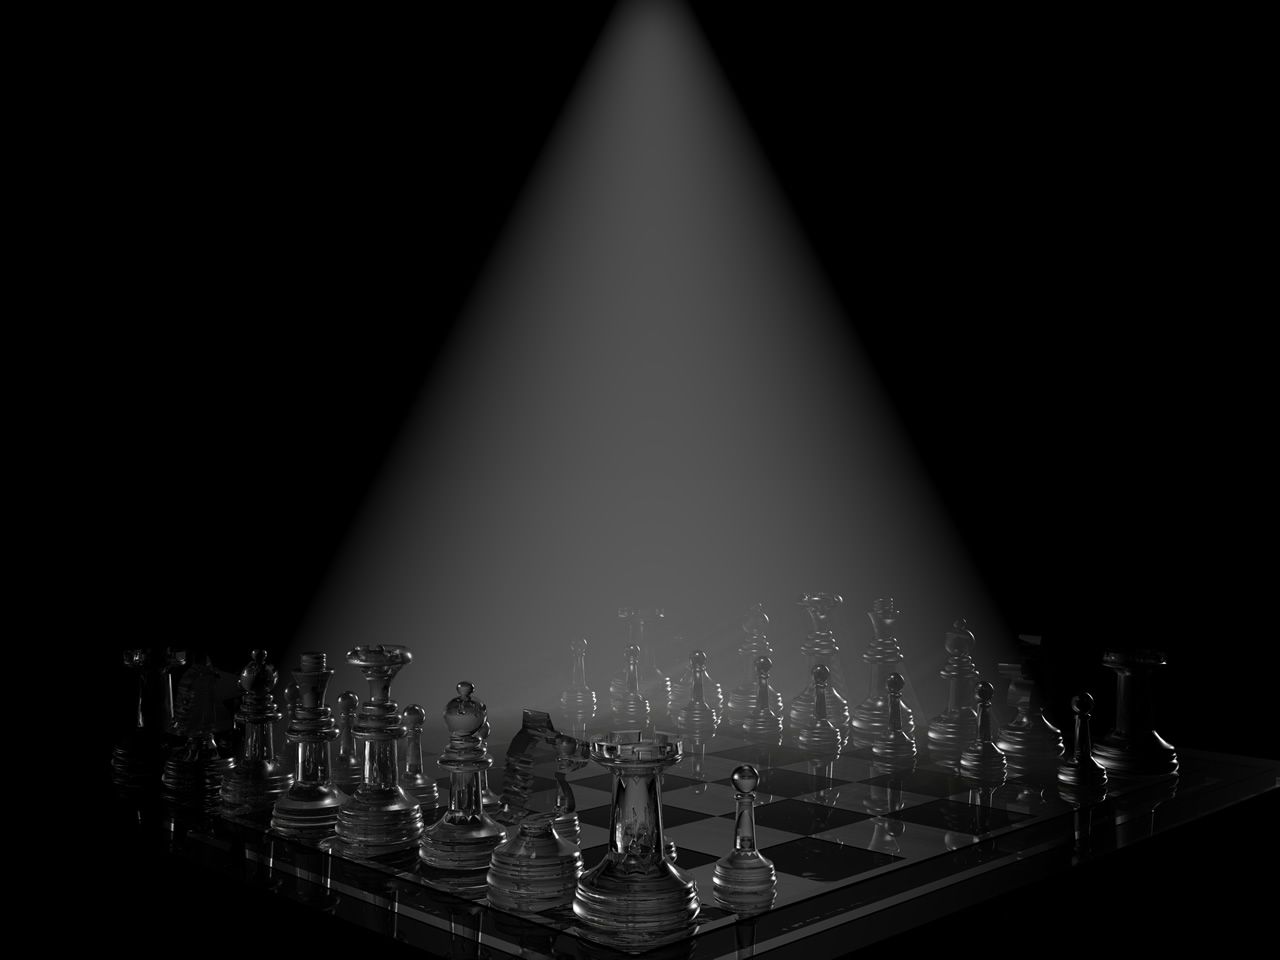 Chess Board by kilik2021 on DeviantArt